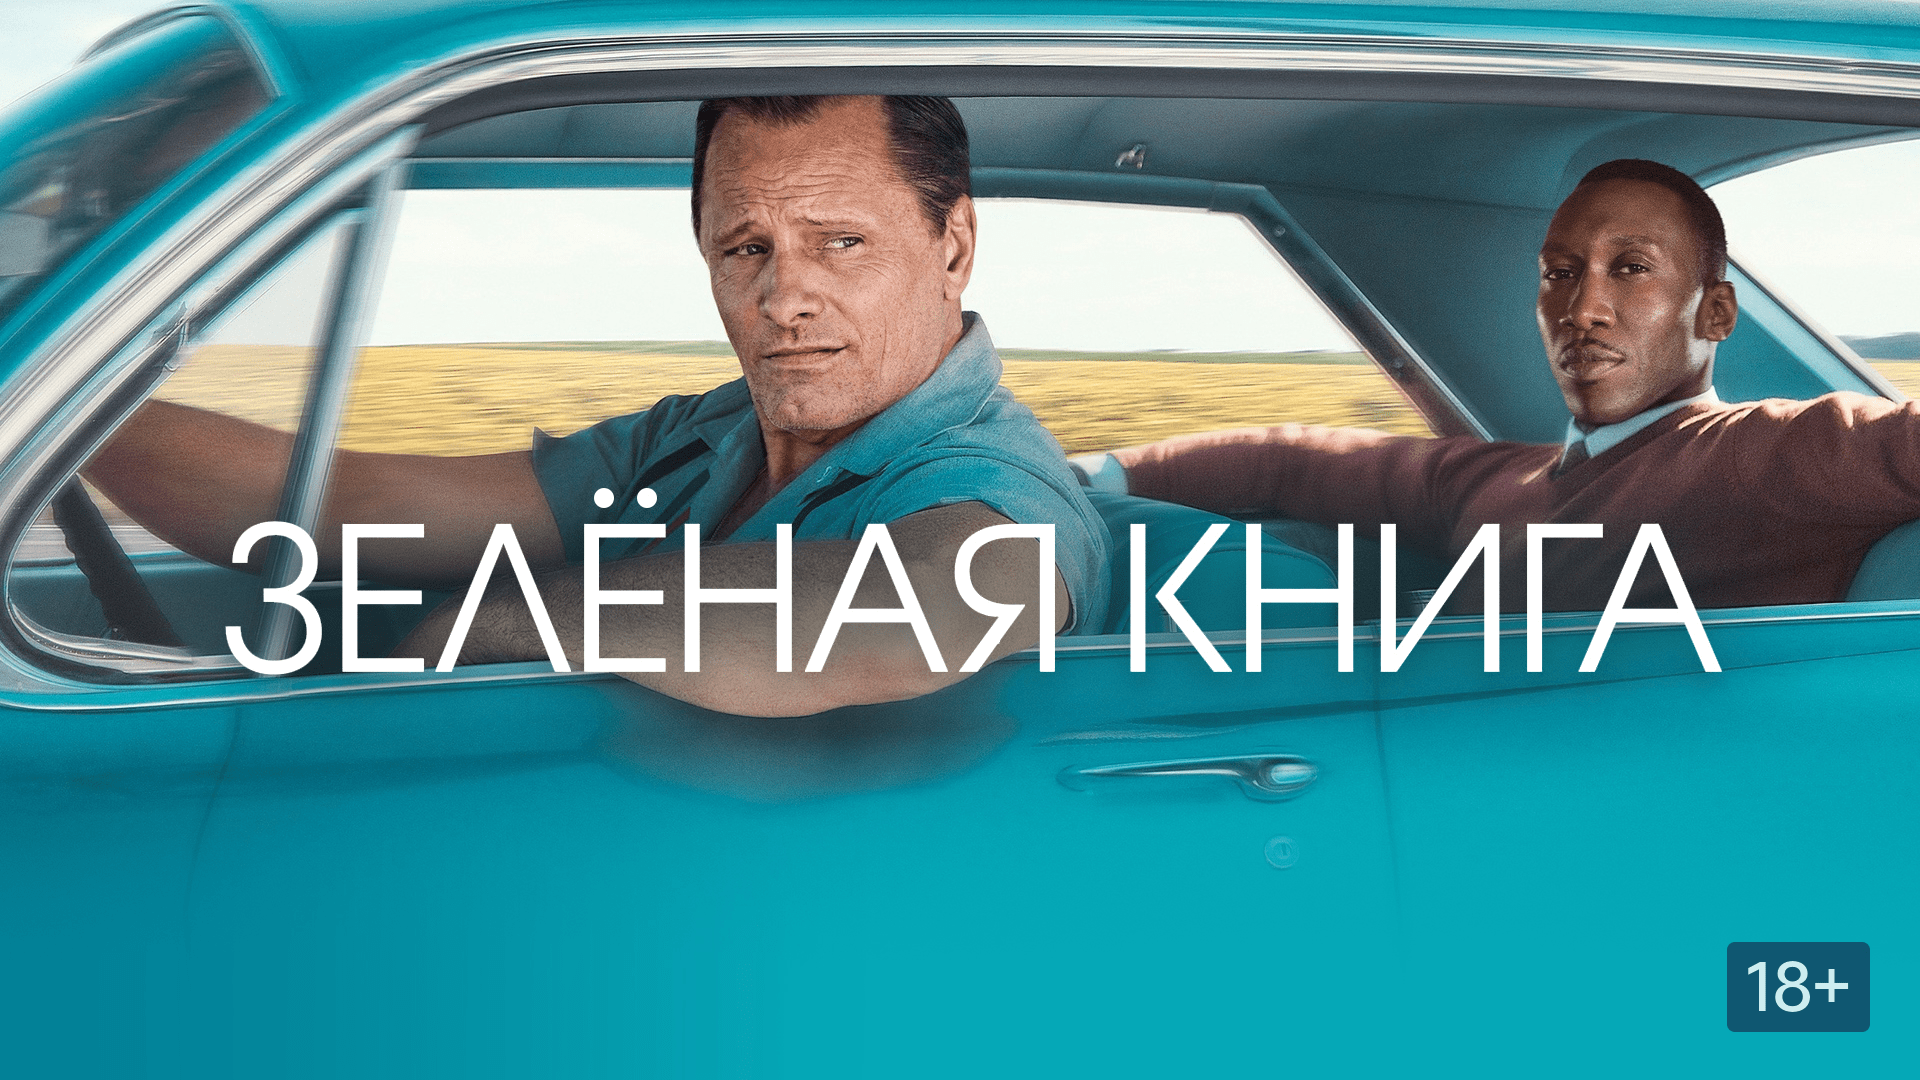 Зелёная книга (2019)  — Русский трейлер